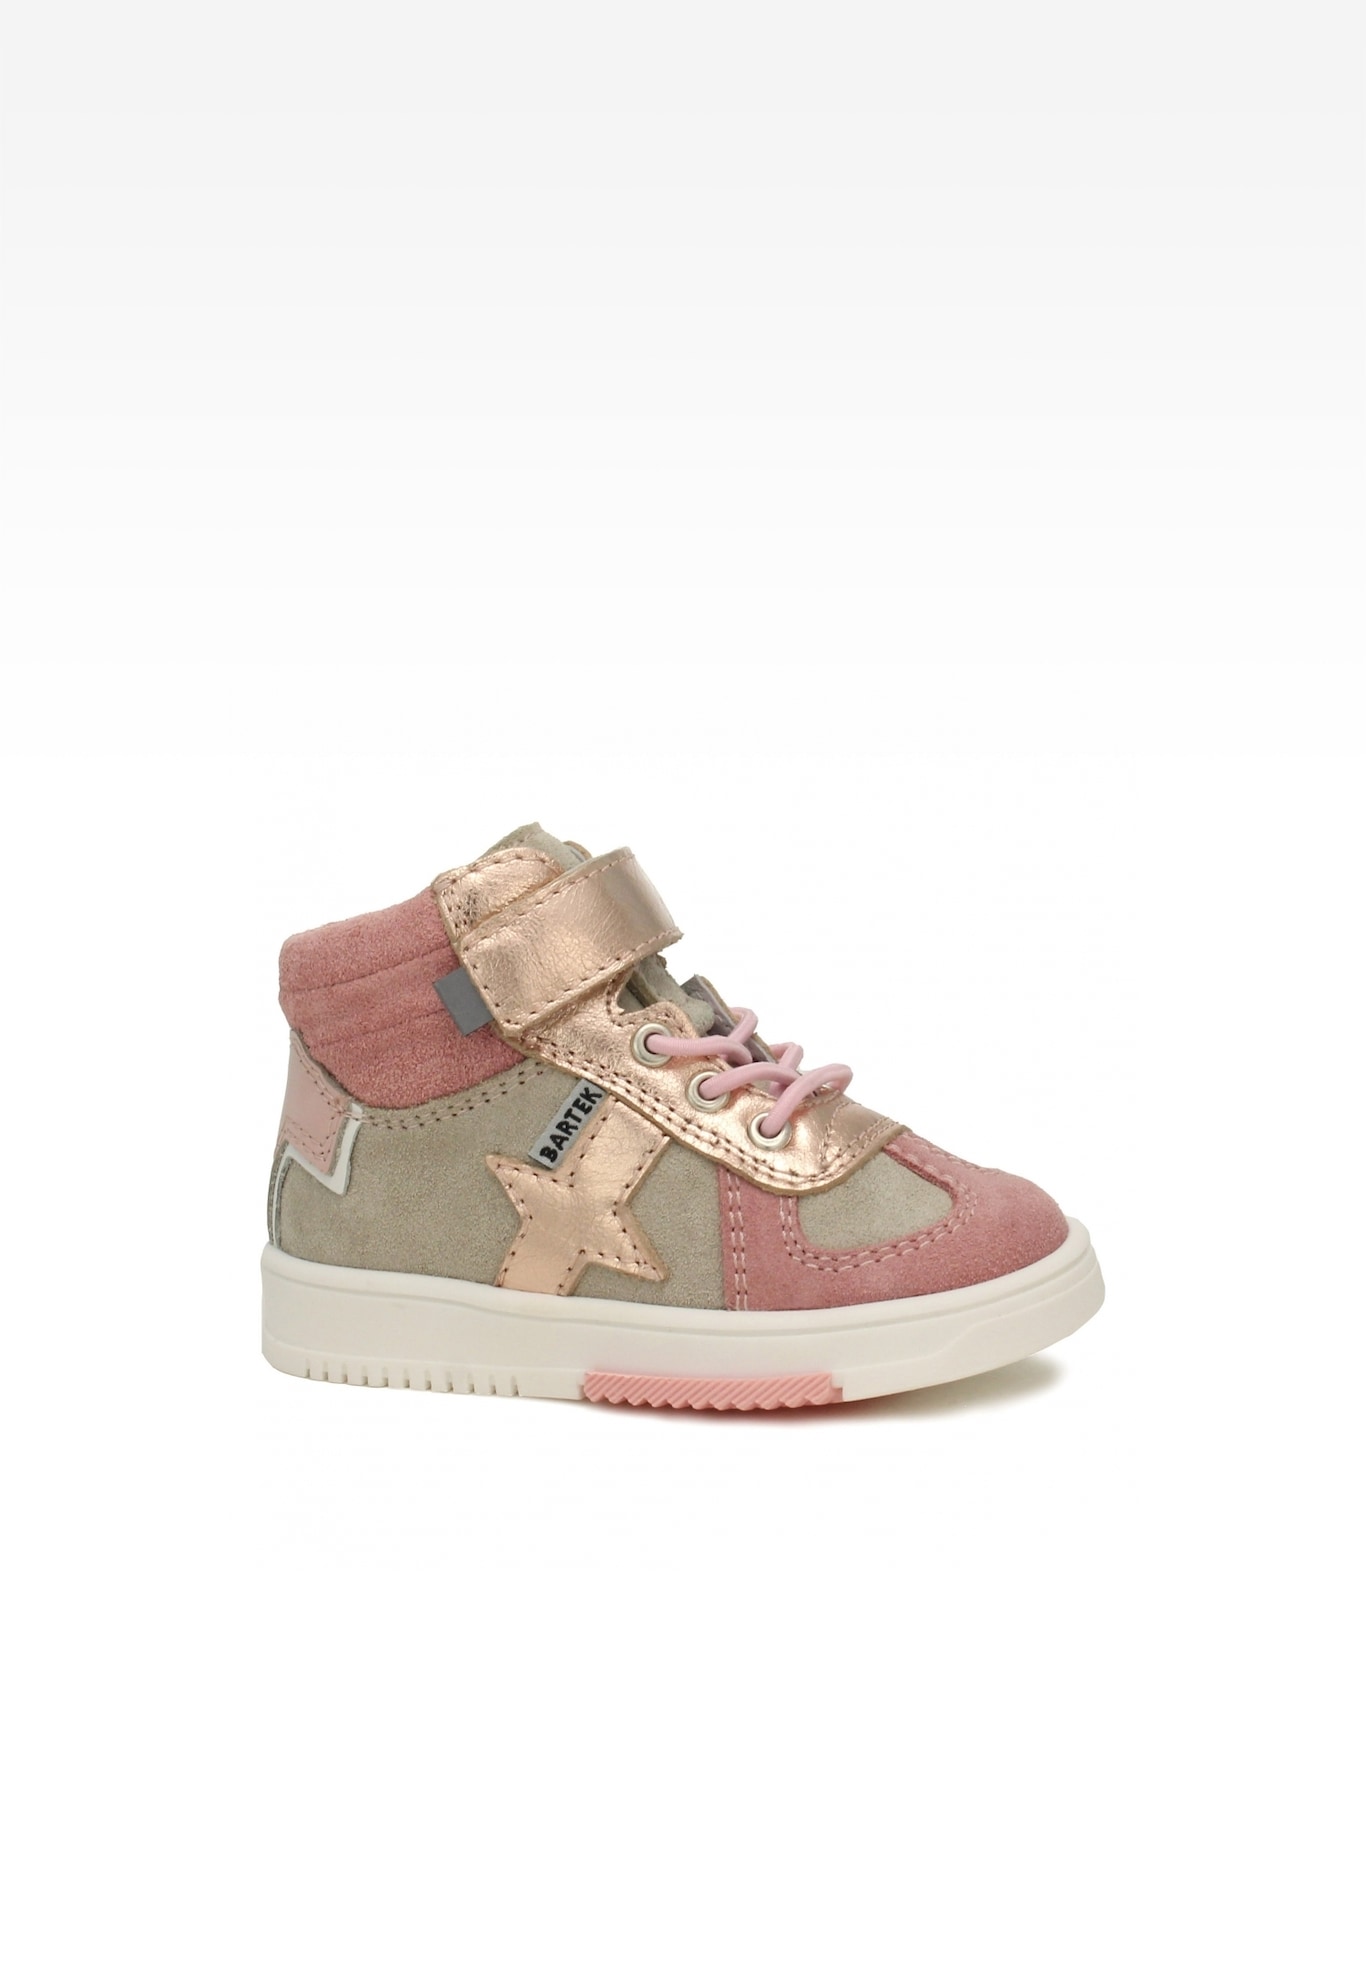 Sneakers BARTEK 11577010, dla dziewcząt, beżowo-różowy